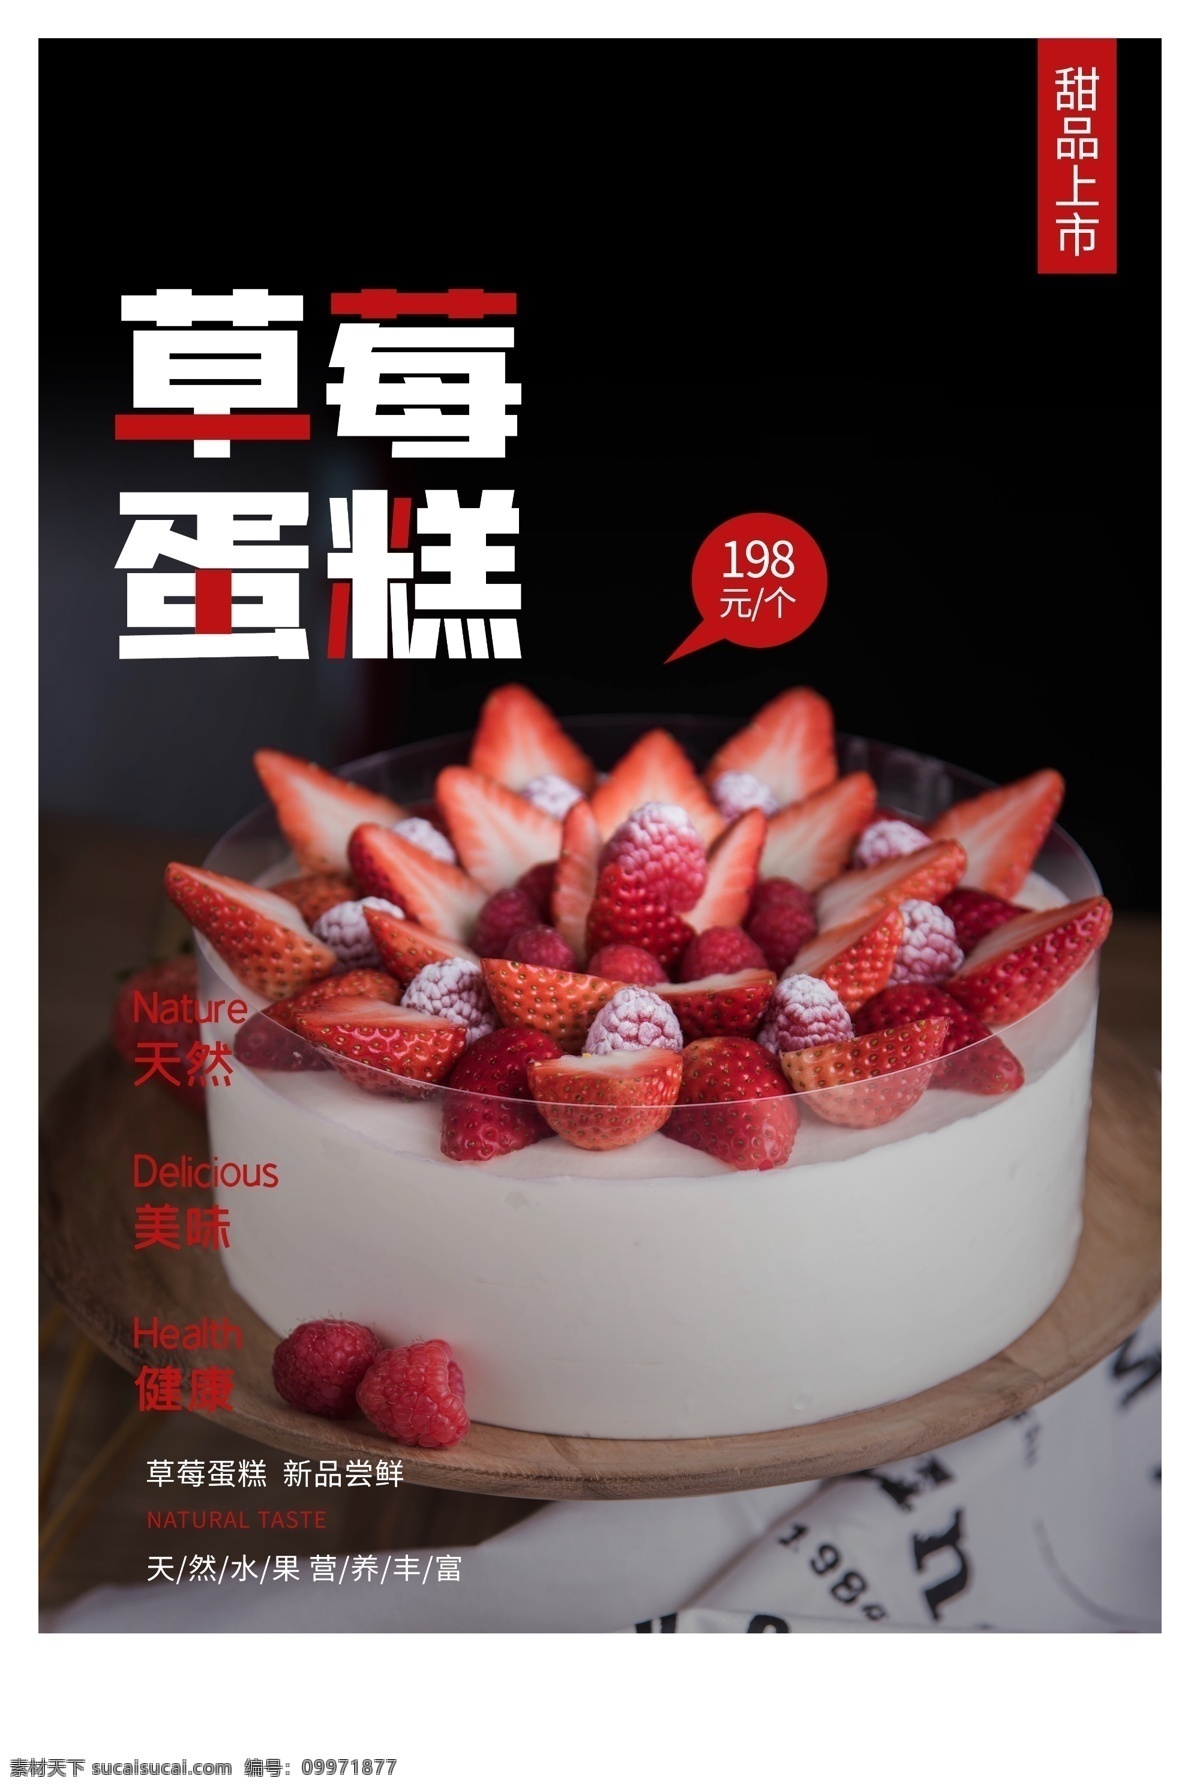 草莓 蛋糕 甜品 活动 宣传海报 素材图片 宣传 海报 饮料 饮品 类